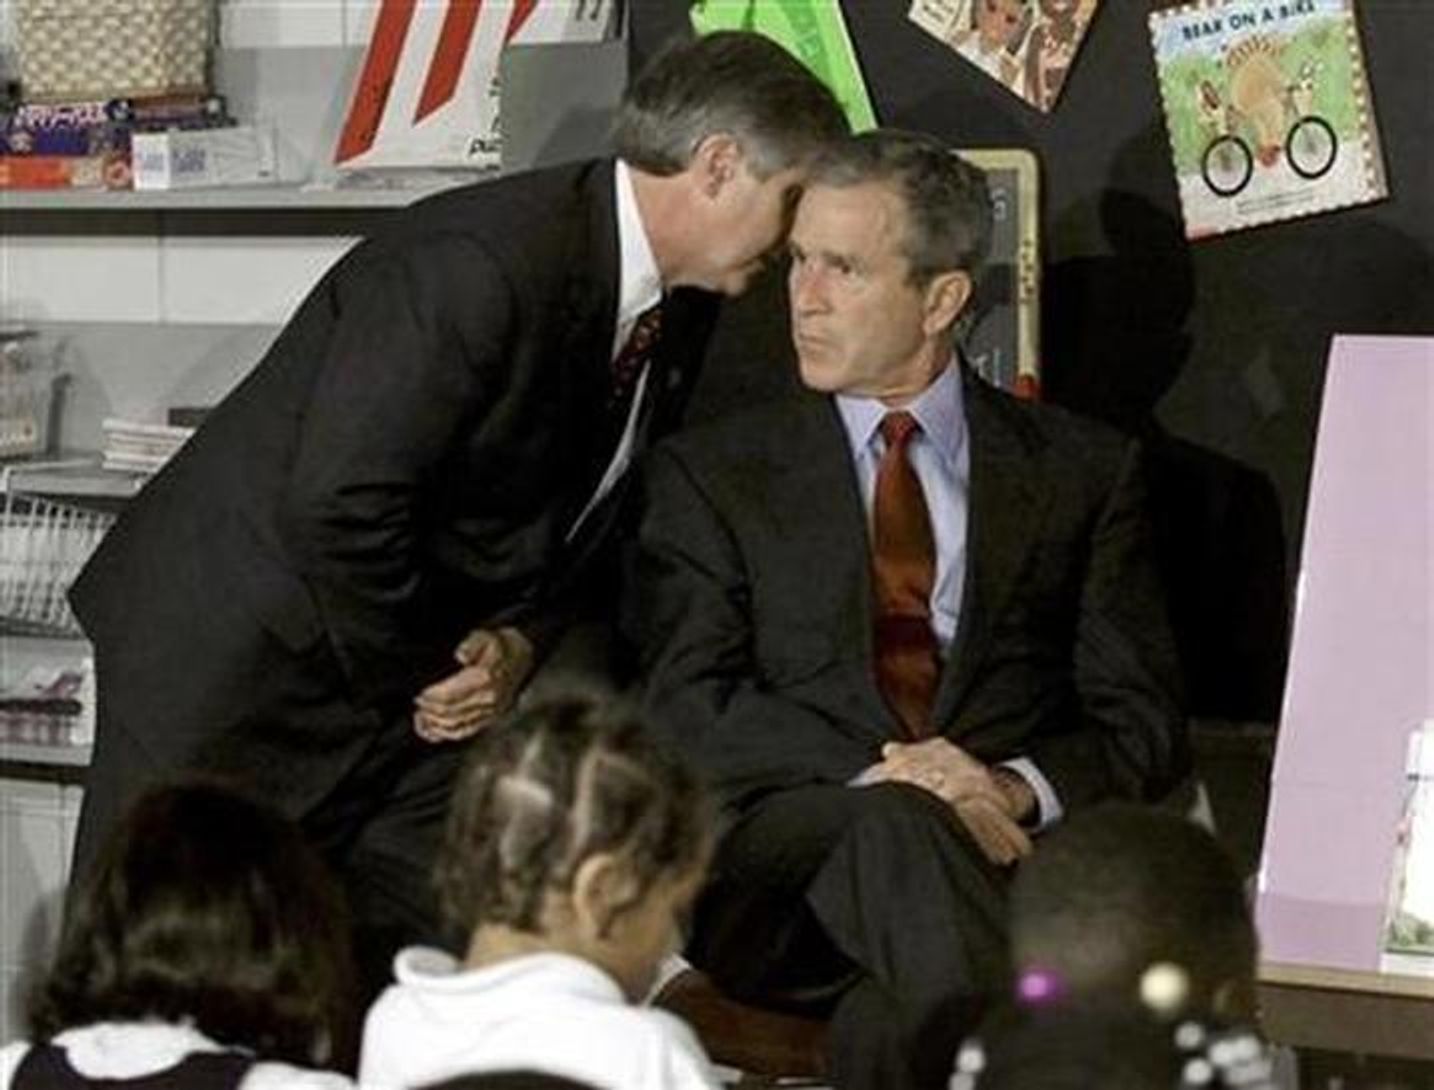 Начальная школа в Сарасоте, Флорида. Во время встречи со школьниками президенту Бушу сообщают о том, что второй самолет врезался во Всемирный торговый центр